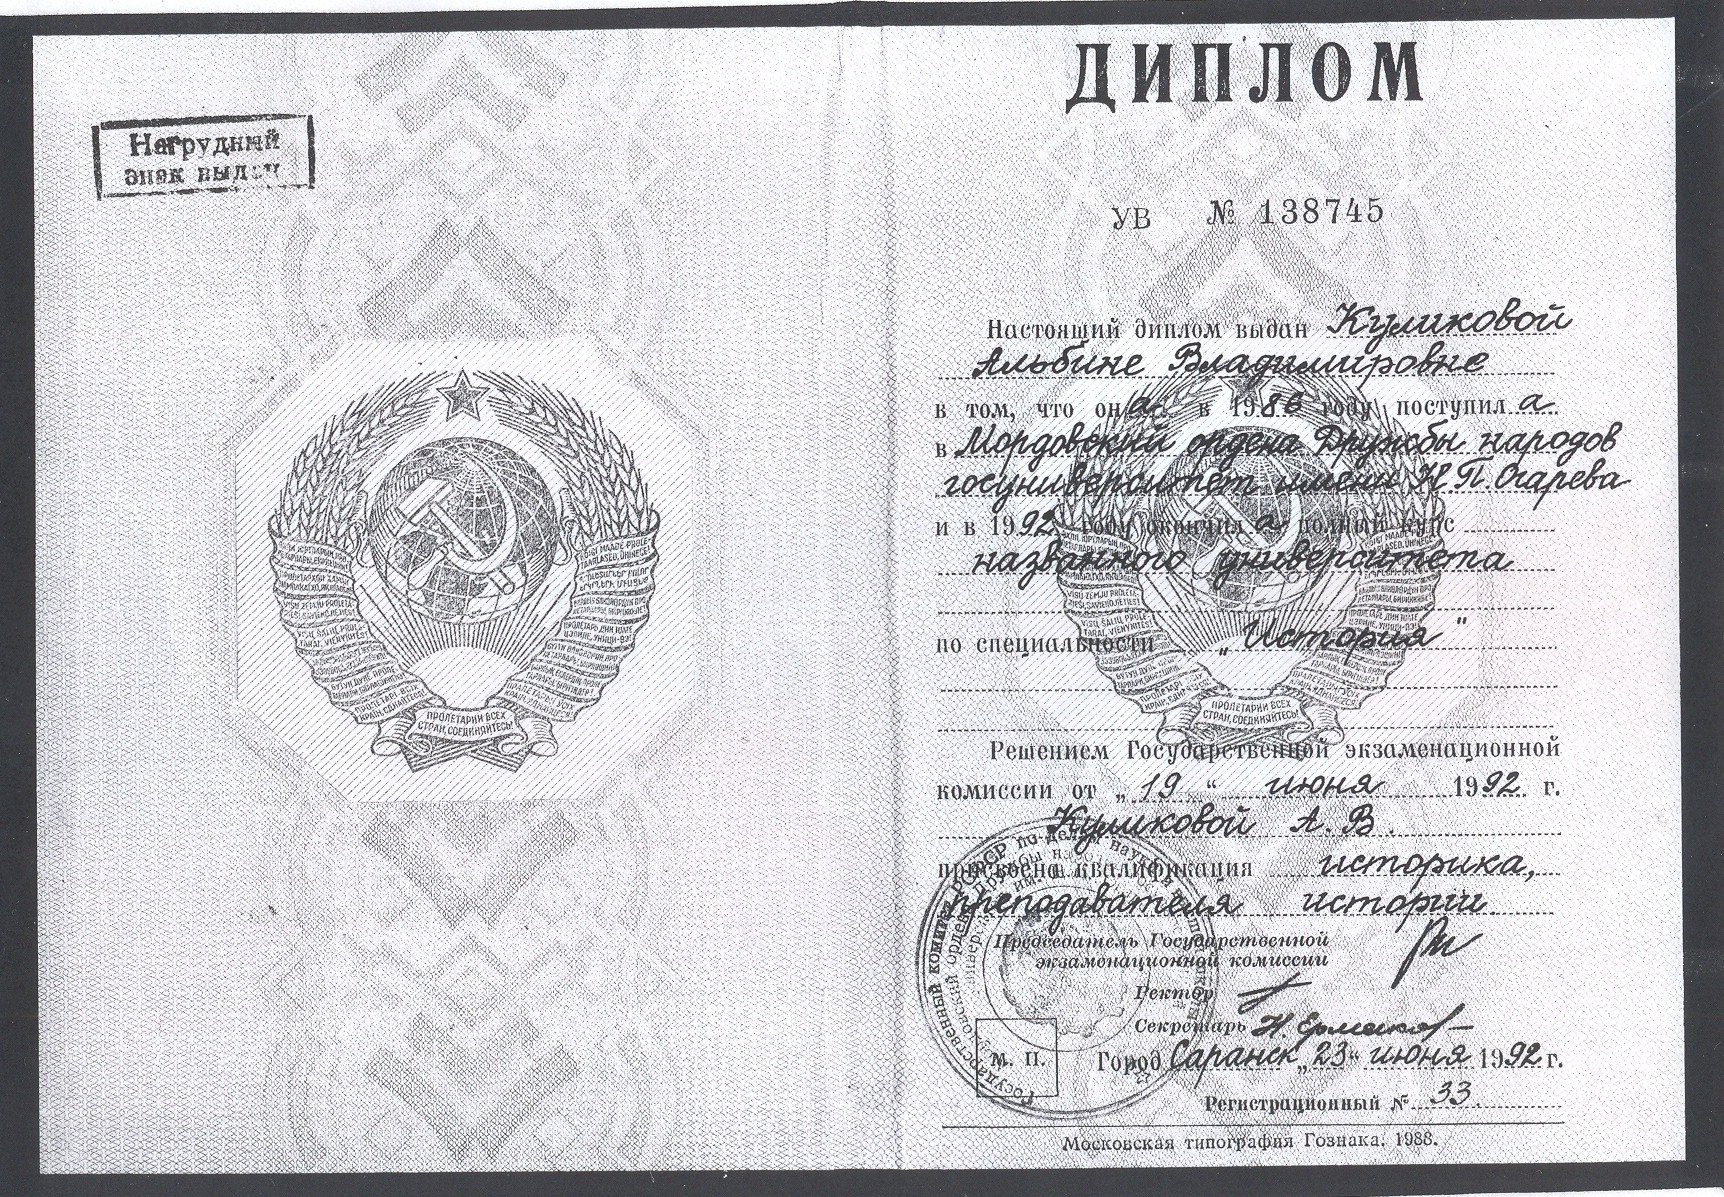 Диплом Московского энергетического института 1990 года